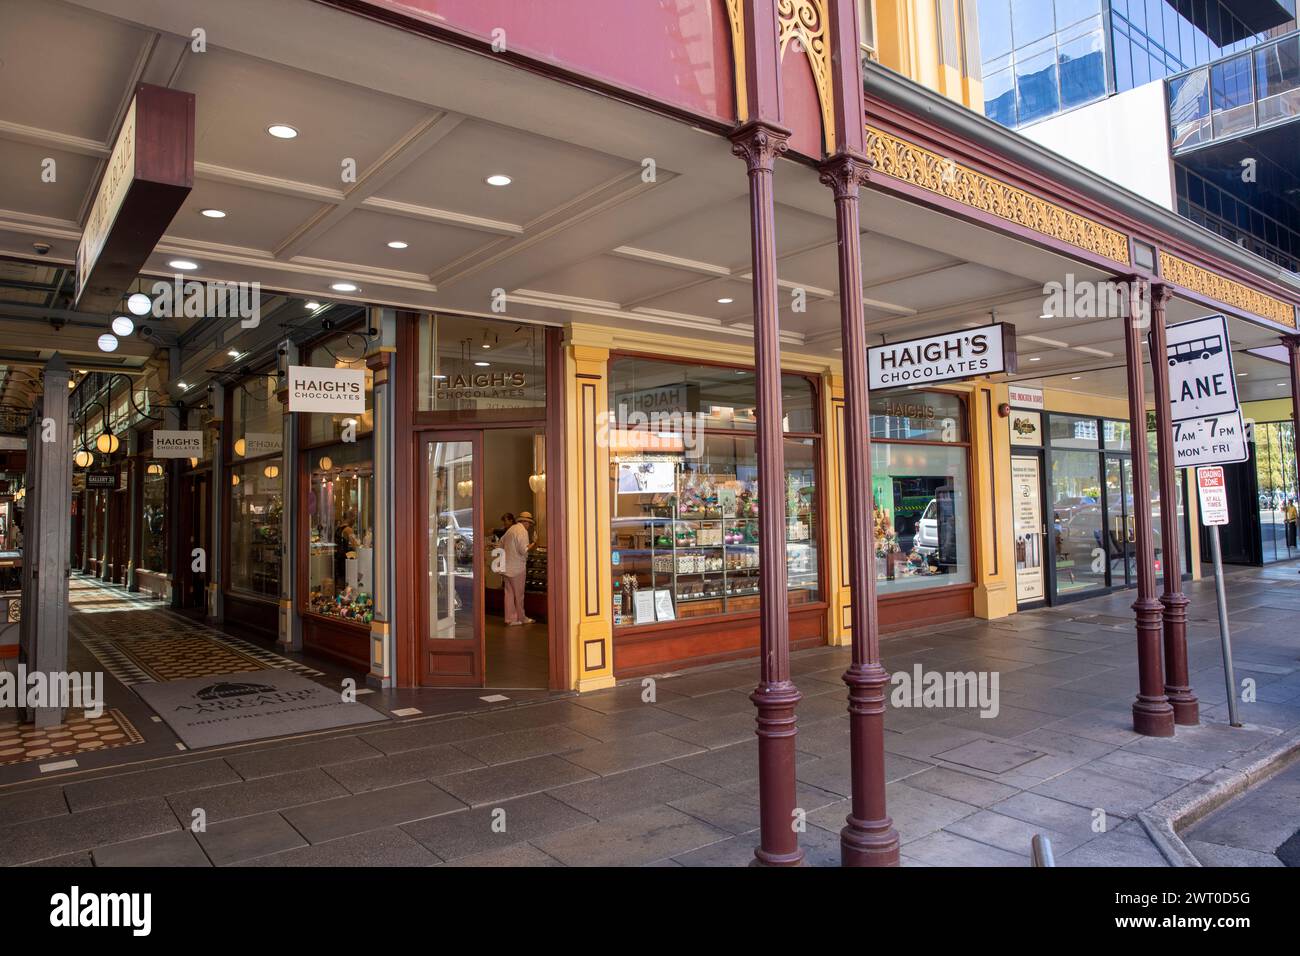 Adelaide Arcade, historische Einkaufspassage und Haigh's Chocolate Shop, Adelaide City Centre, South Australia, März 2024 Stockfoto